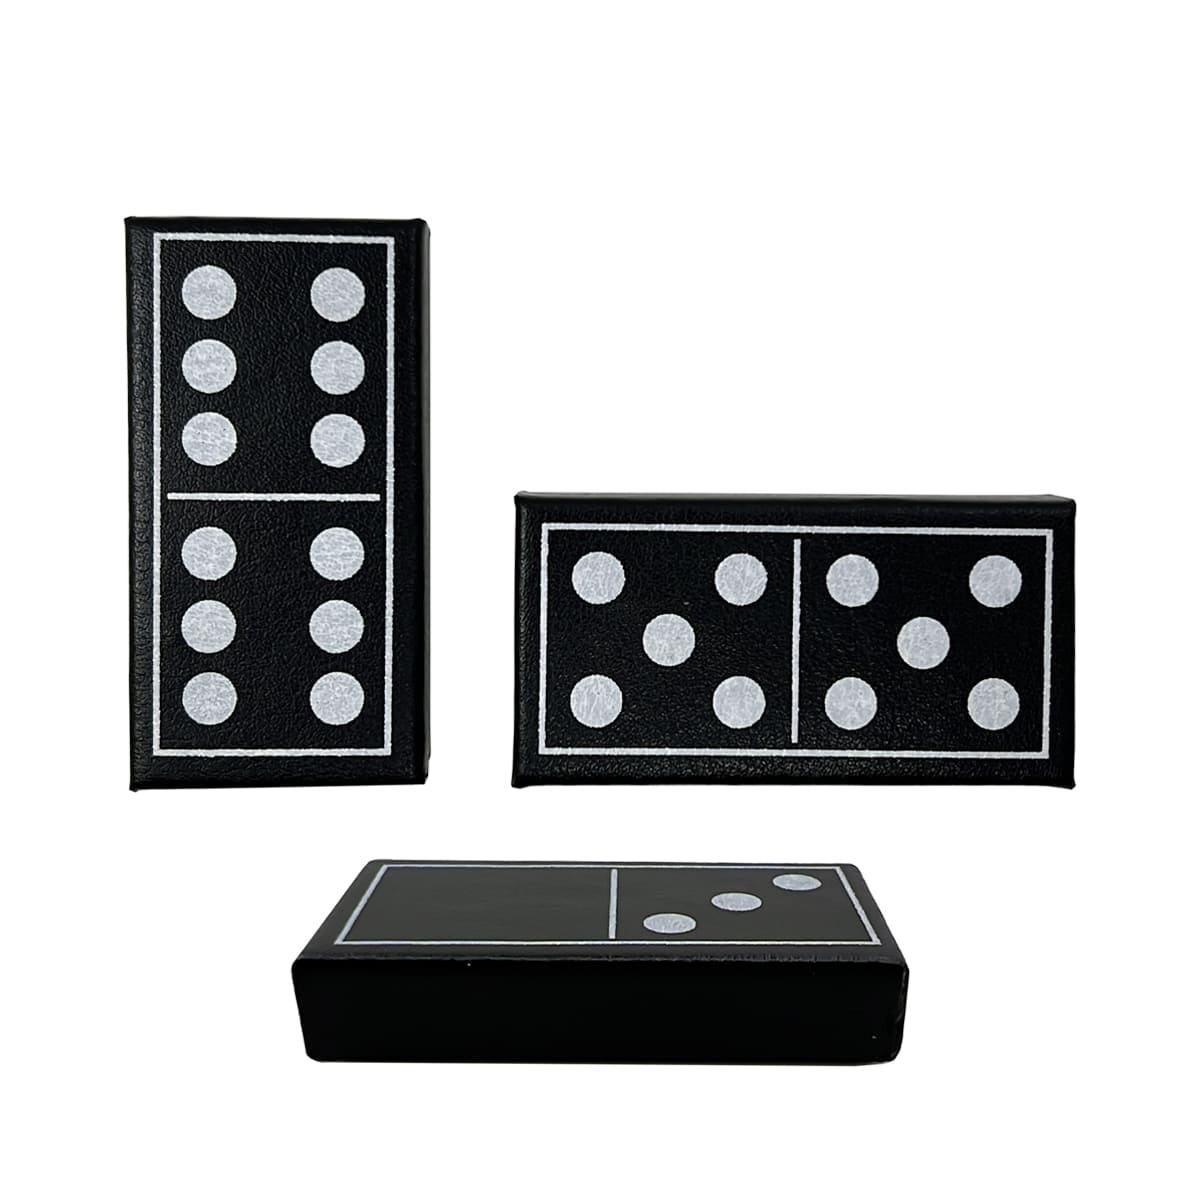 Luxus-Domino-Sets Double Six Standard 28 Steine mit schwarzem Lederetui